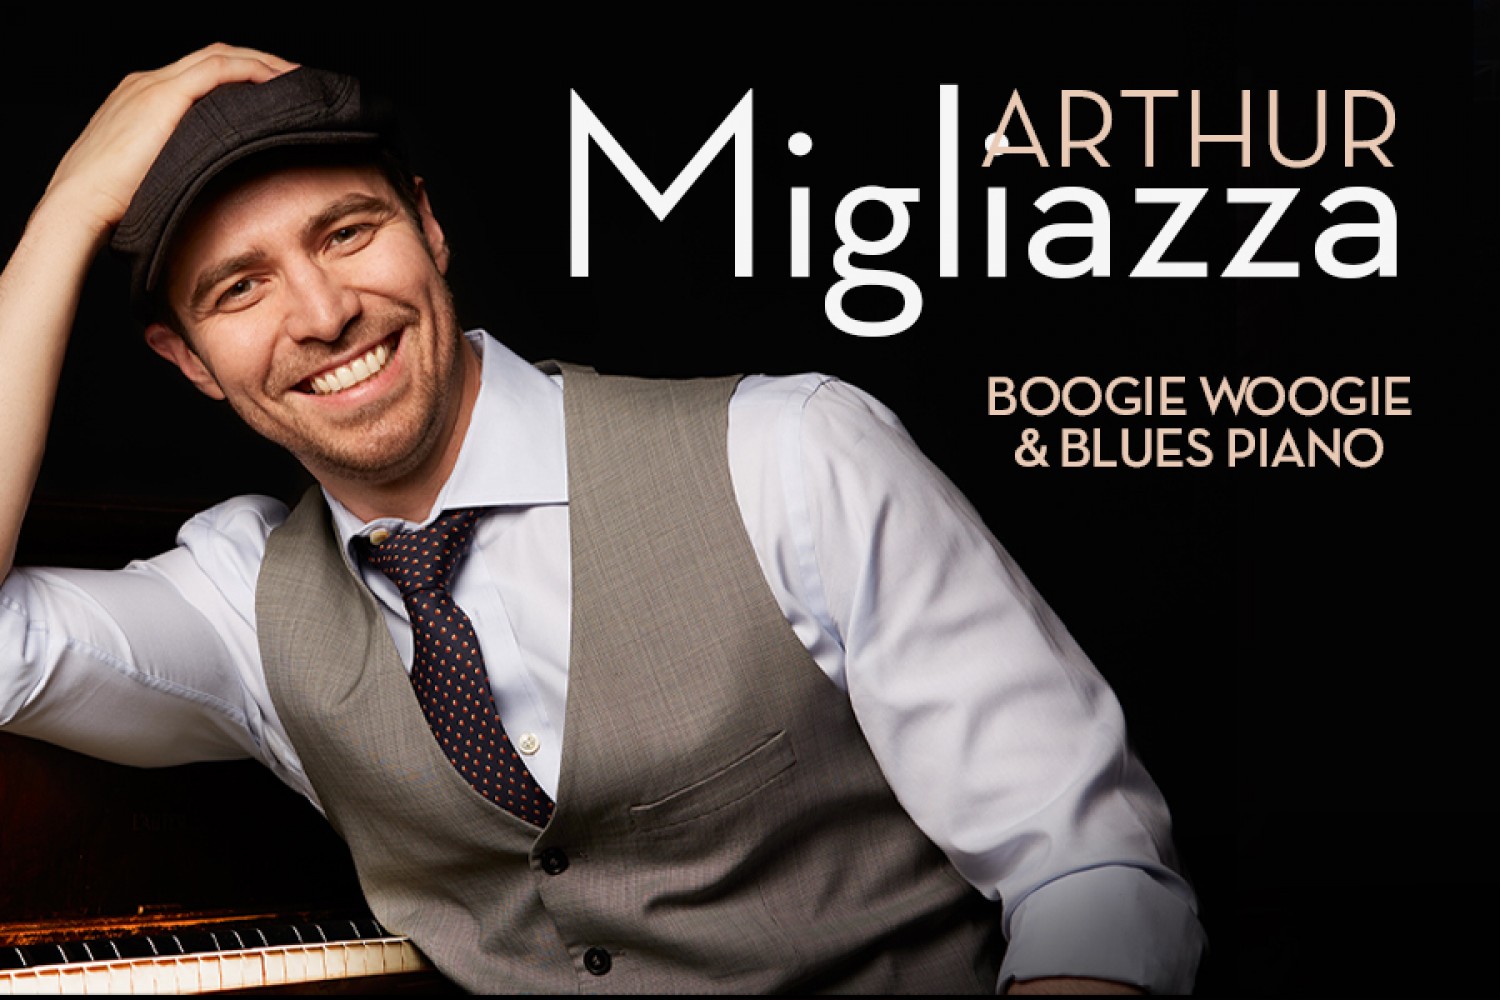 Comment jouer au piano Boogie Woogie, Arthur Migliazza, 9781495007910, Livres